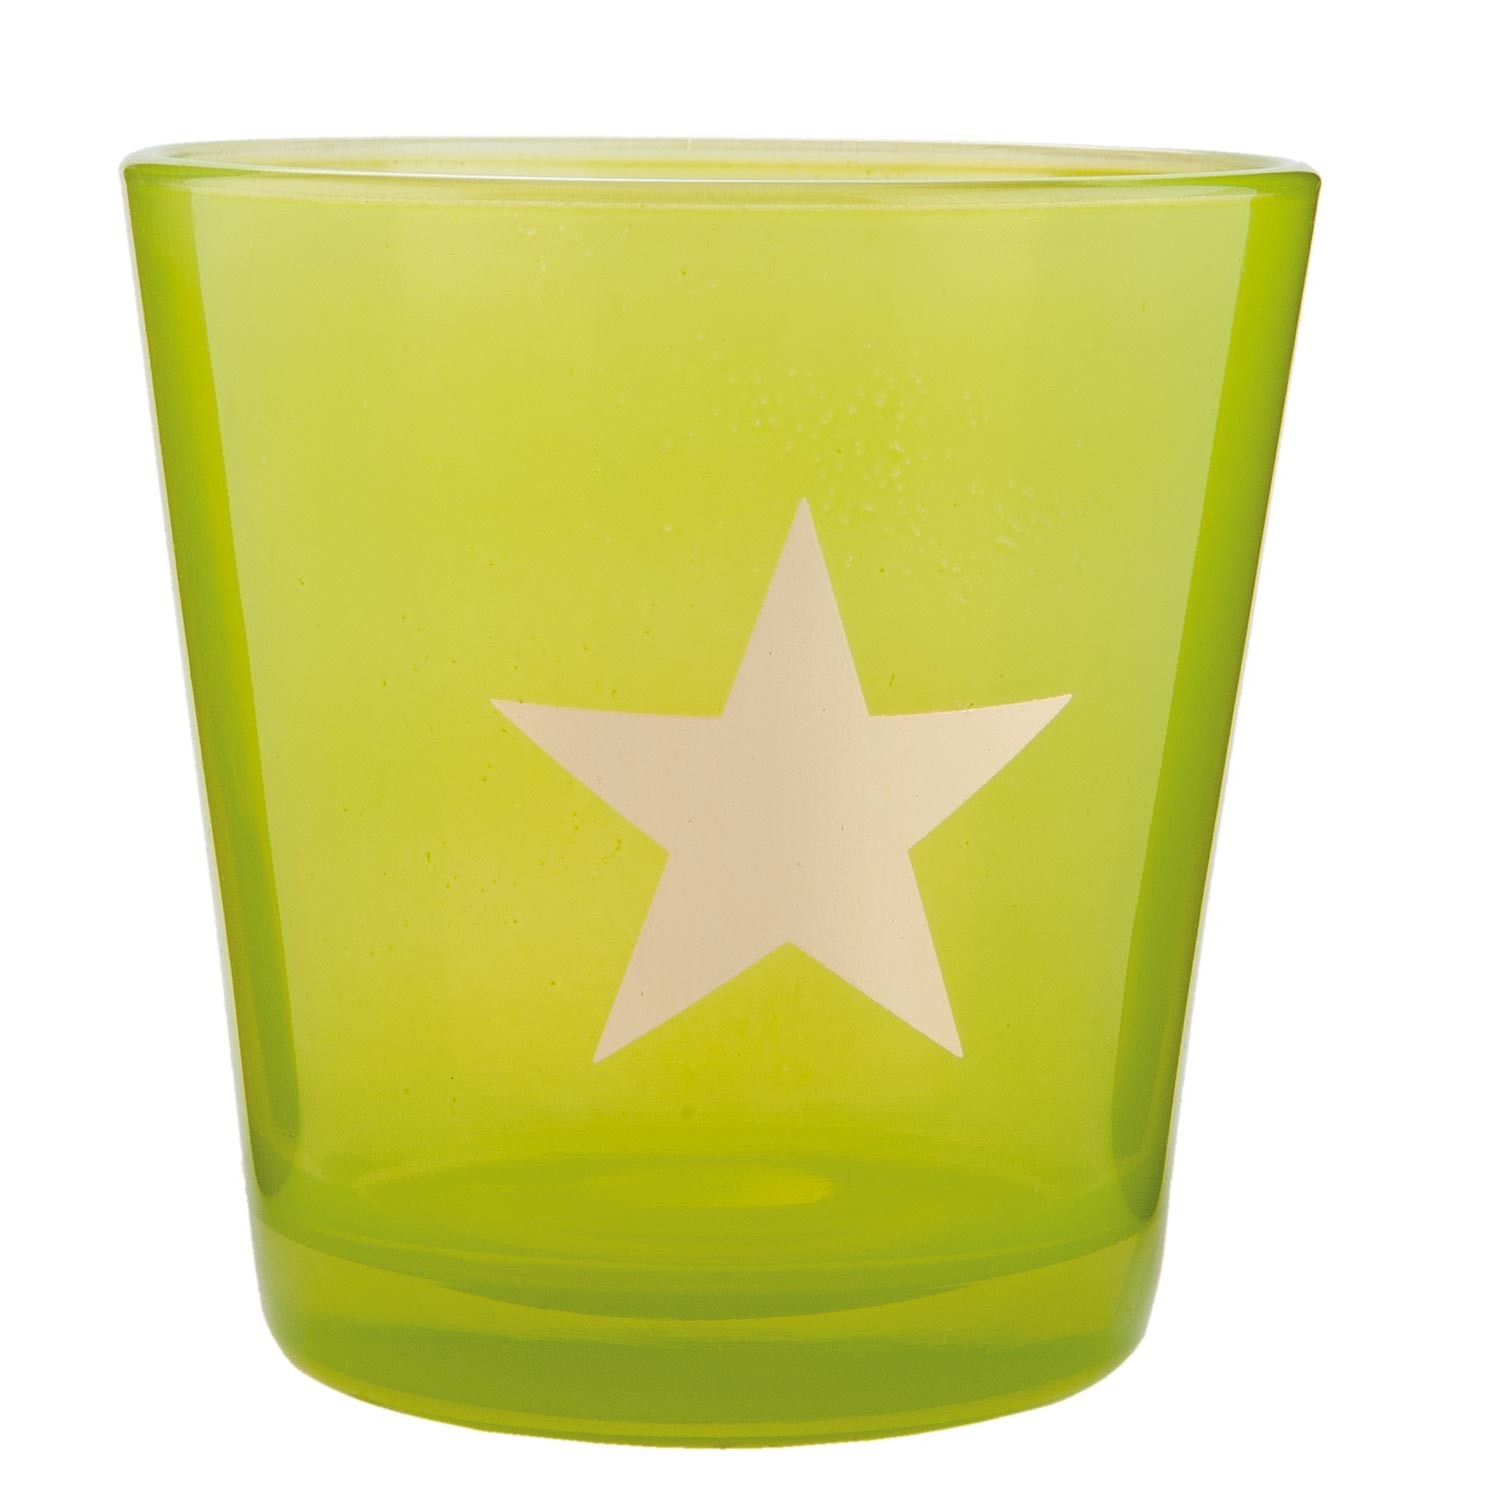 Zelený svícen na čajovou svíčku s hvězdou - Ø 10*10 cm 6GL1547GR